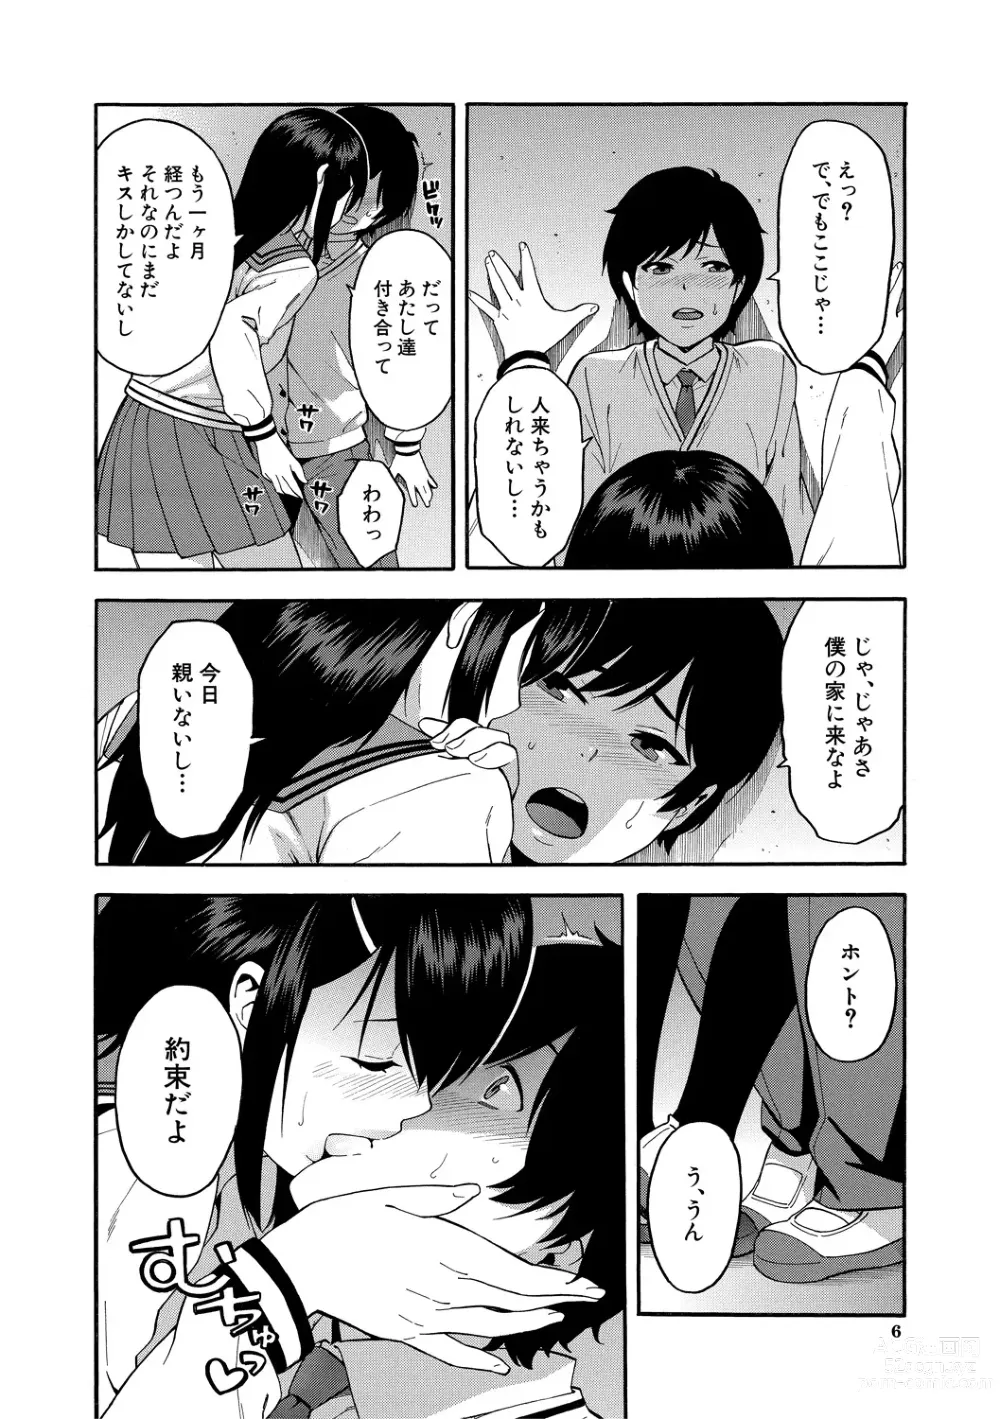 Page 6 of manga Boku no Kanojo o Netotte Kudasai